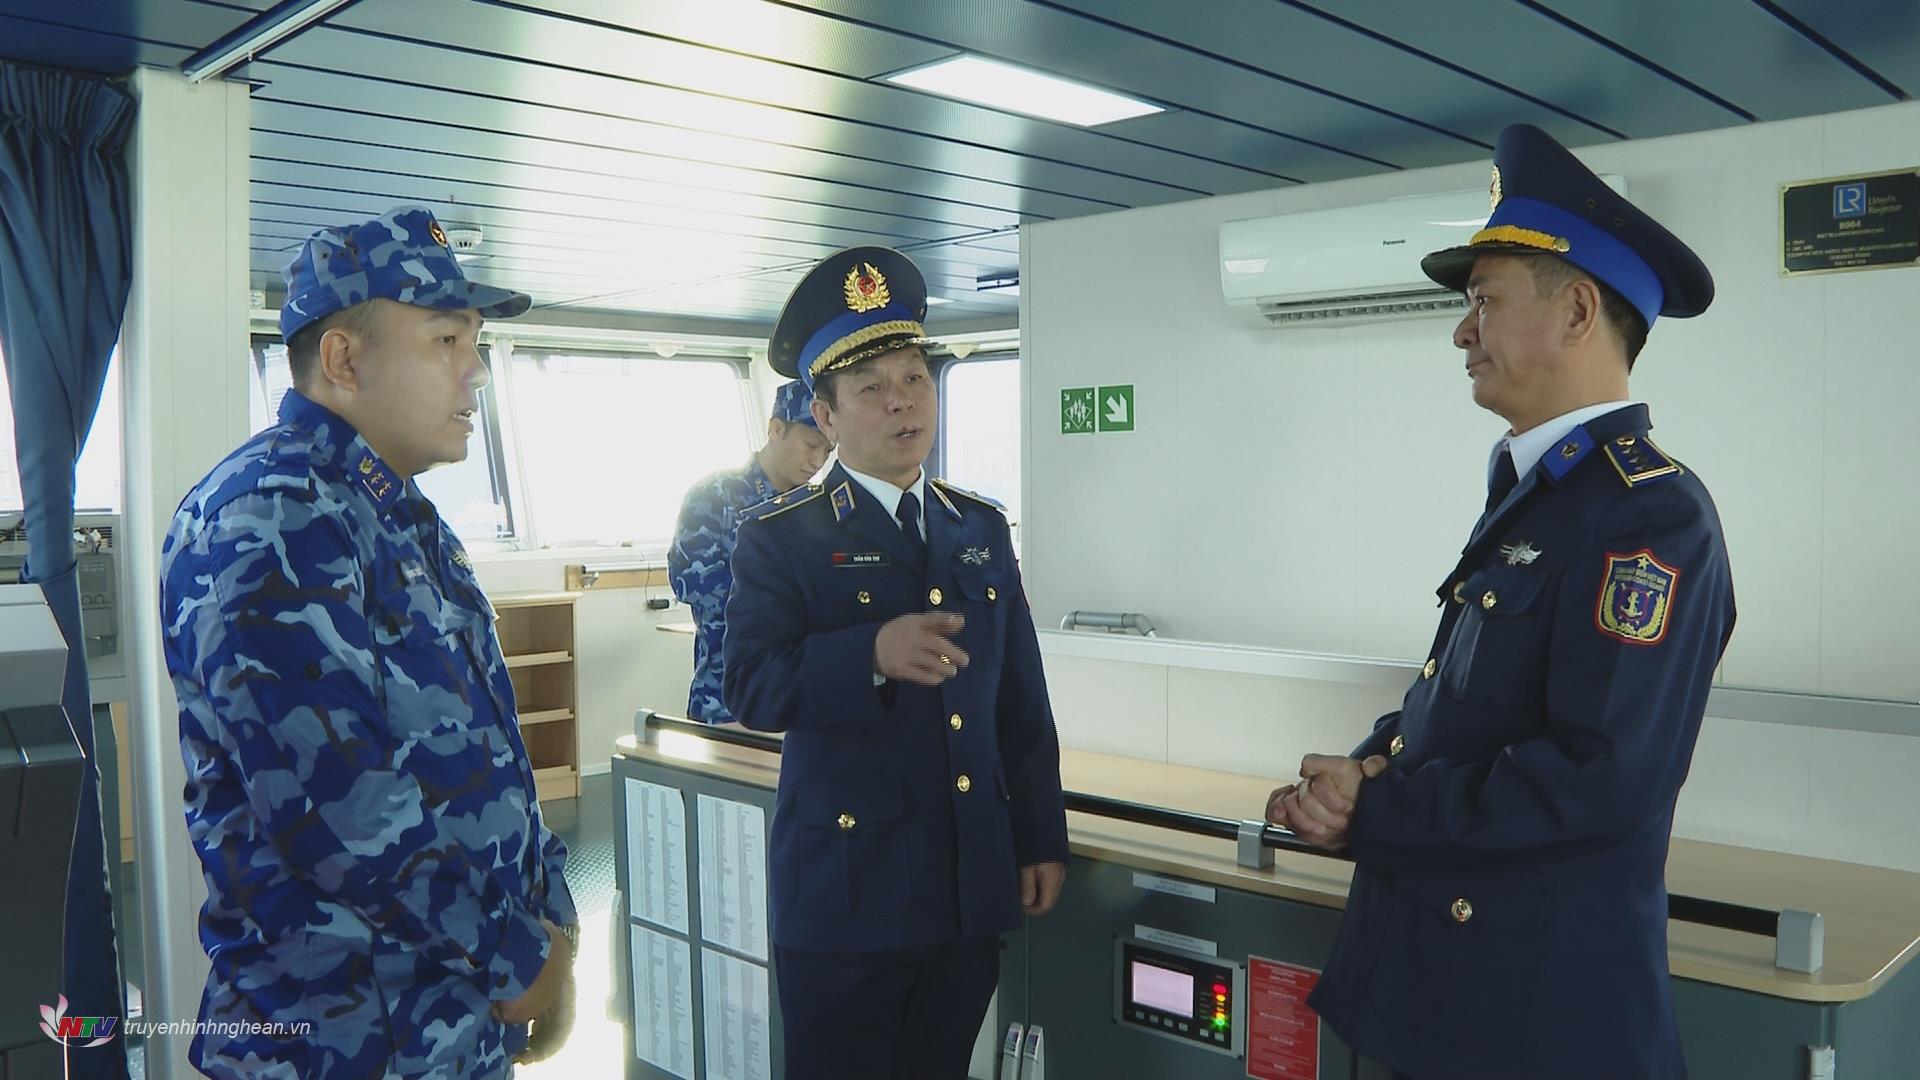 Tư Lệnh Vùng CS biển 1 kiểm tra lần cuối trước khi lên đường thực hiện tuần tra chung.